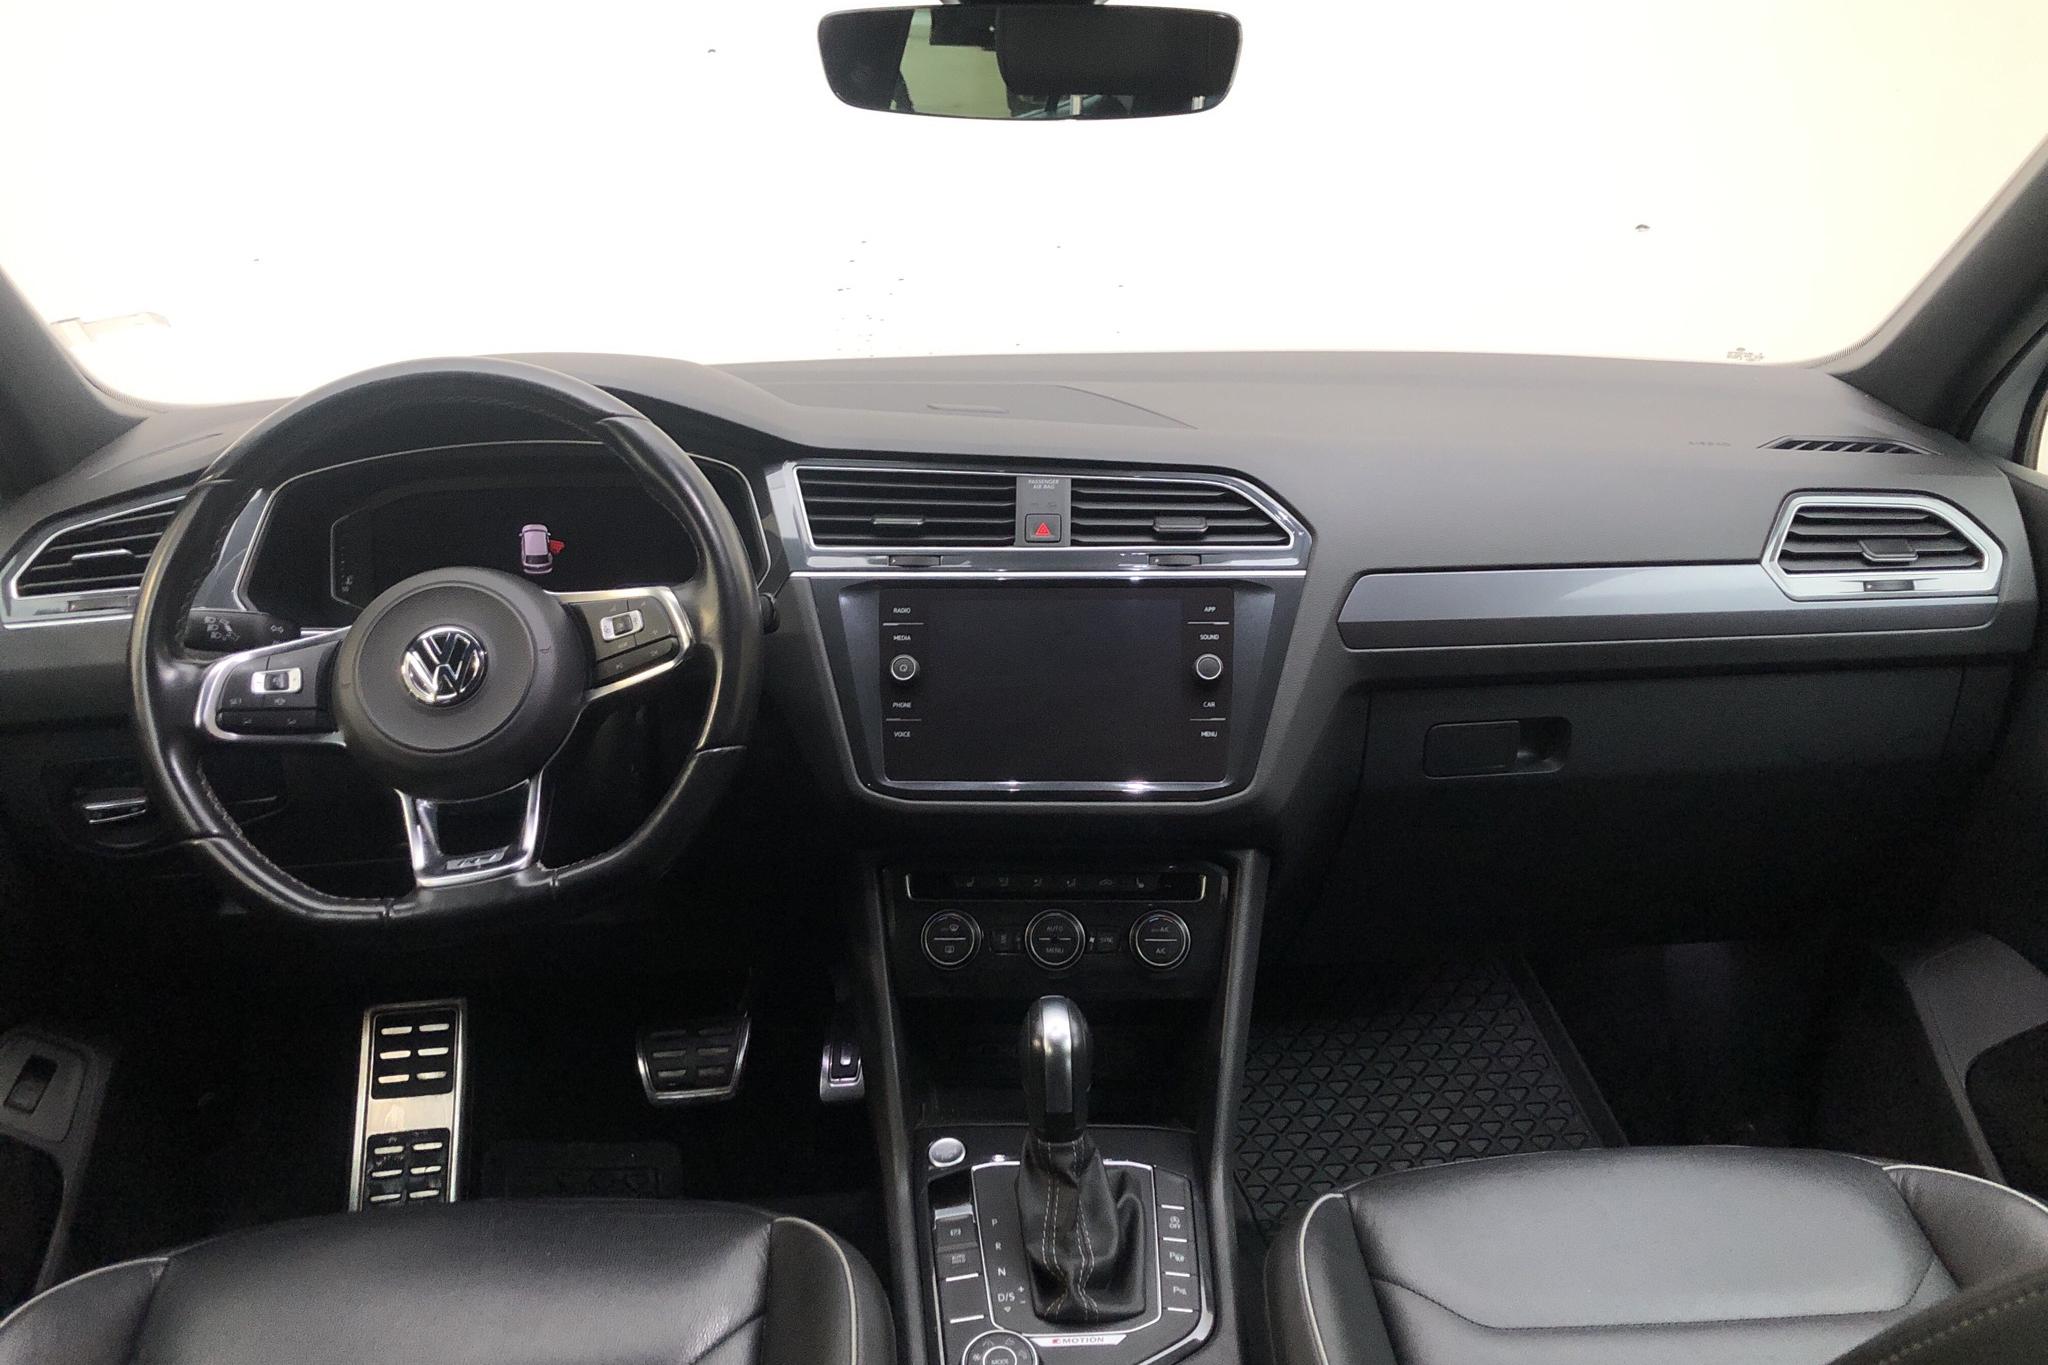 VW Tiguan 2.0 TDI 4MOTION (240hk) - 132 110 km - Automatic - white - 2020